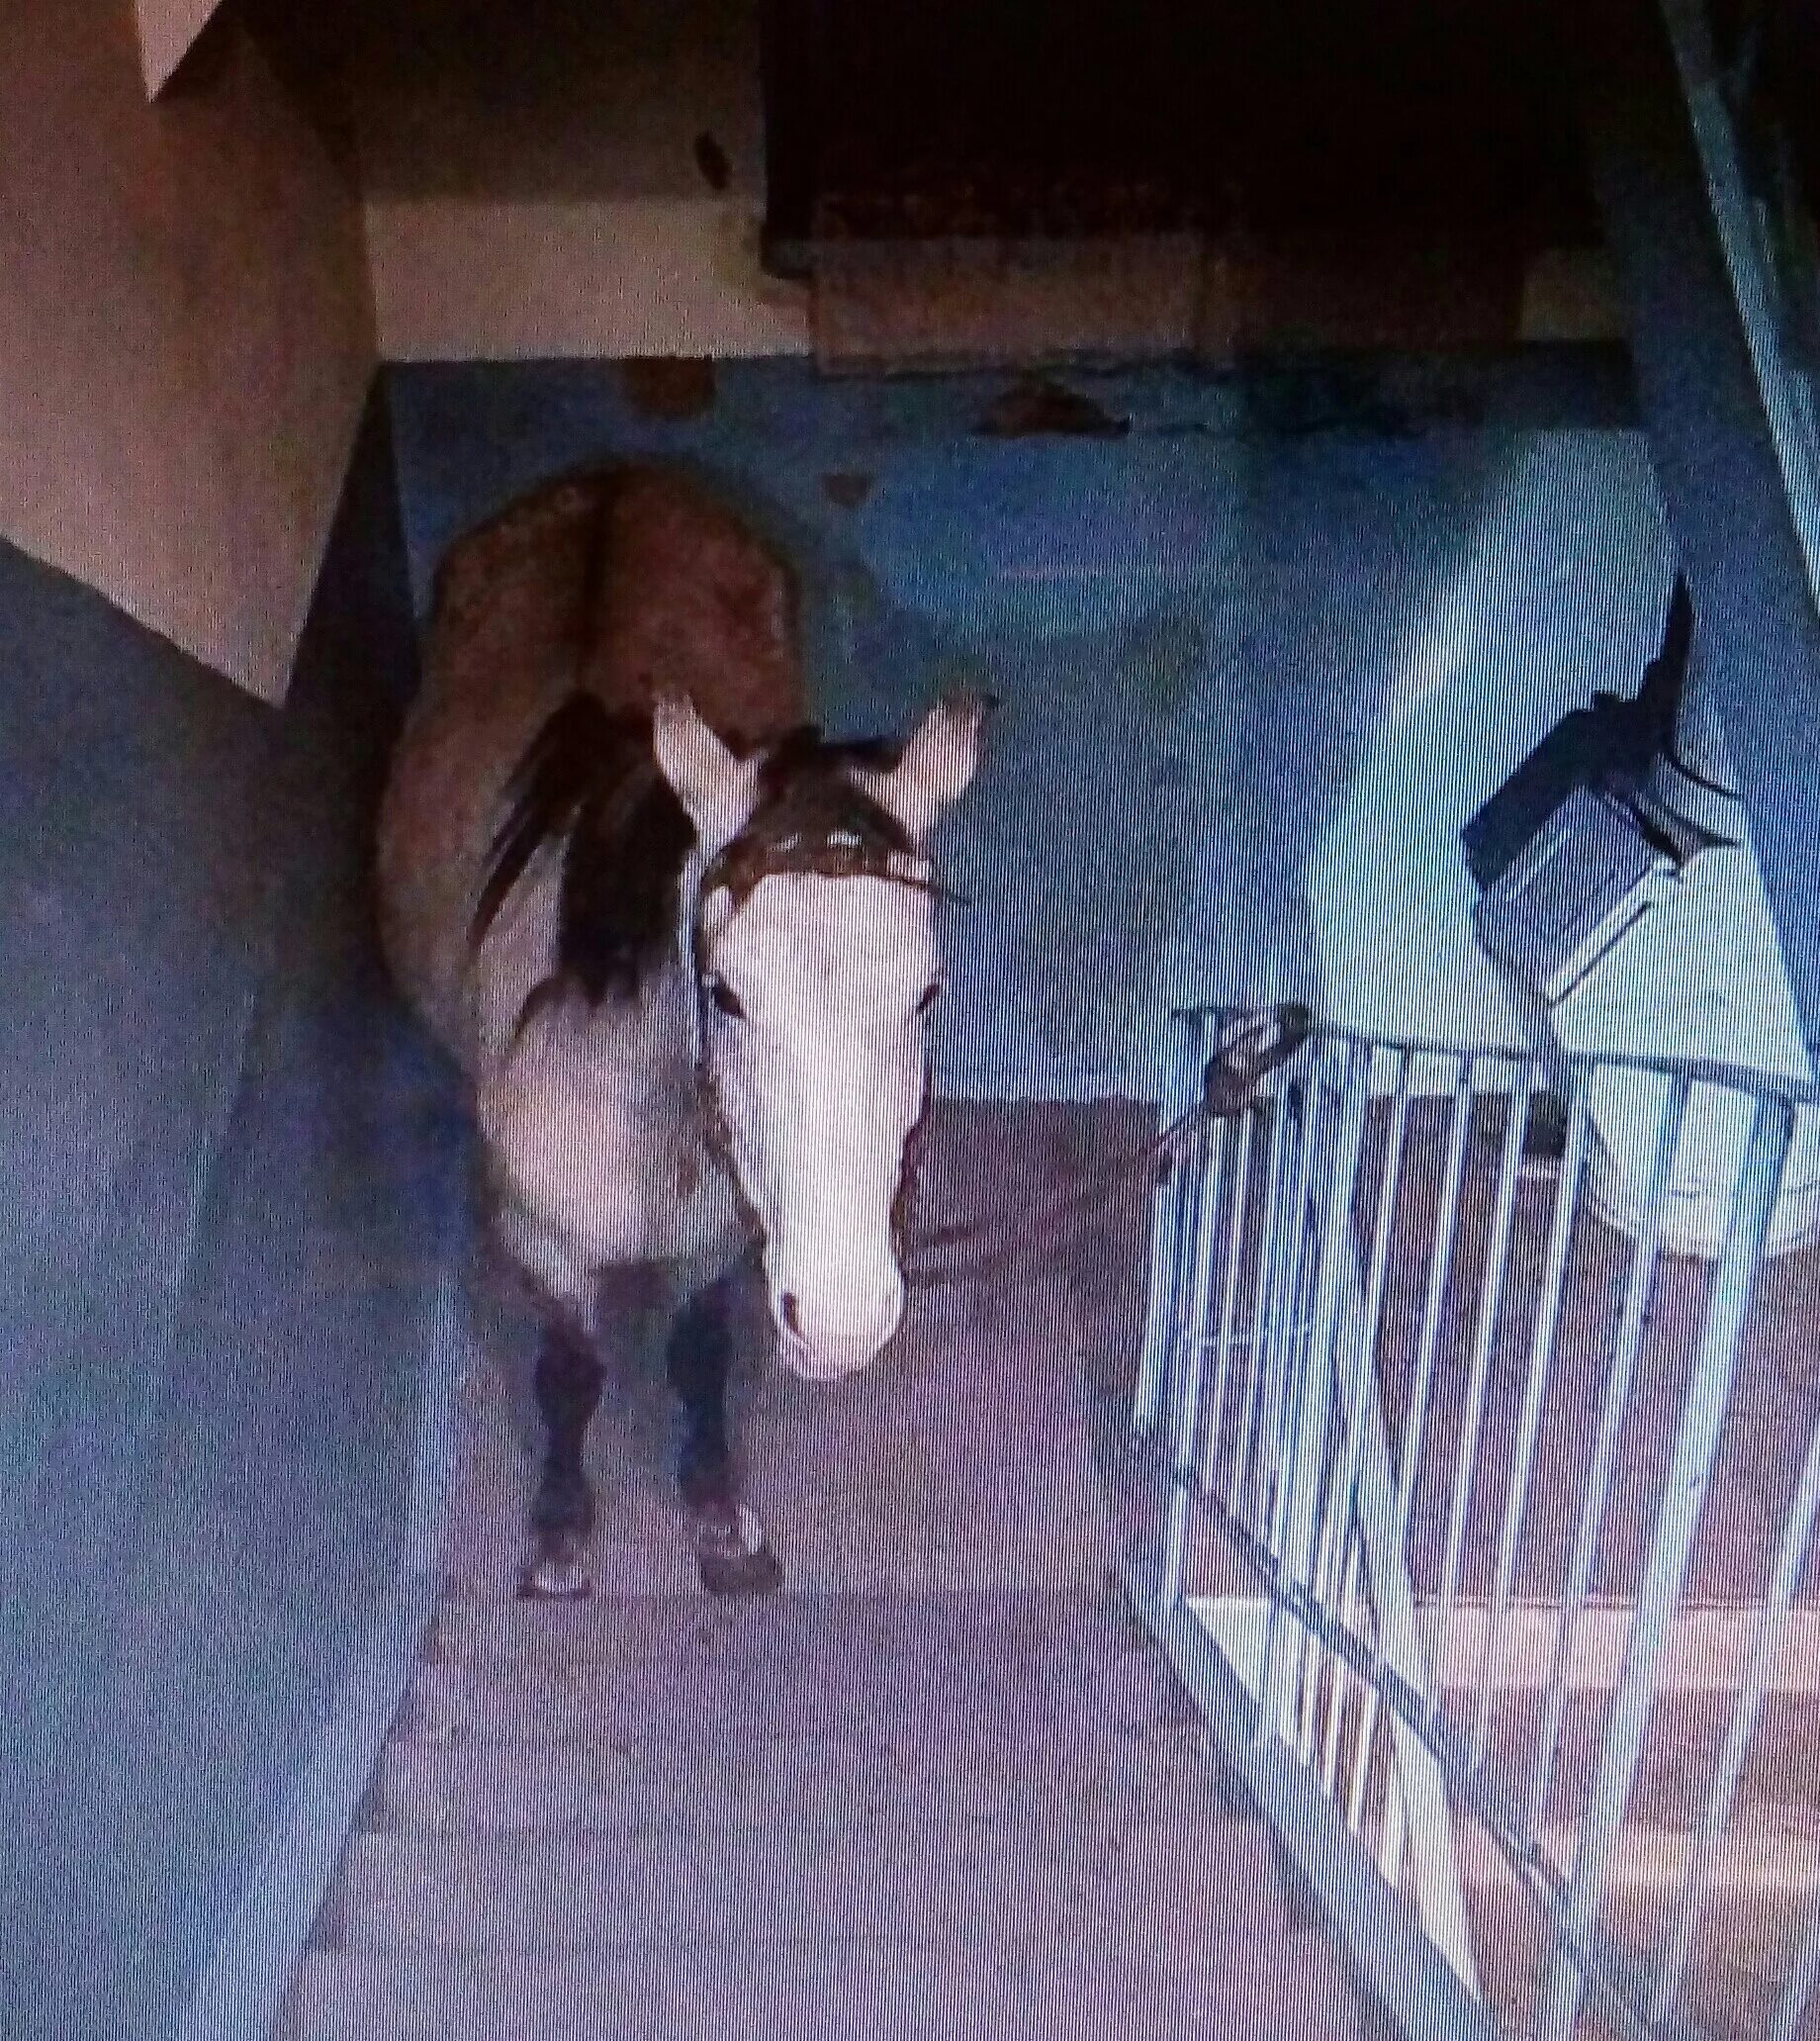 Мужик привел коня в квартиру